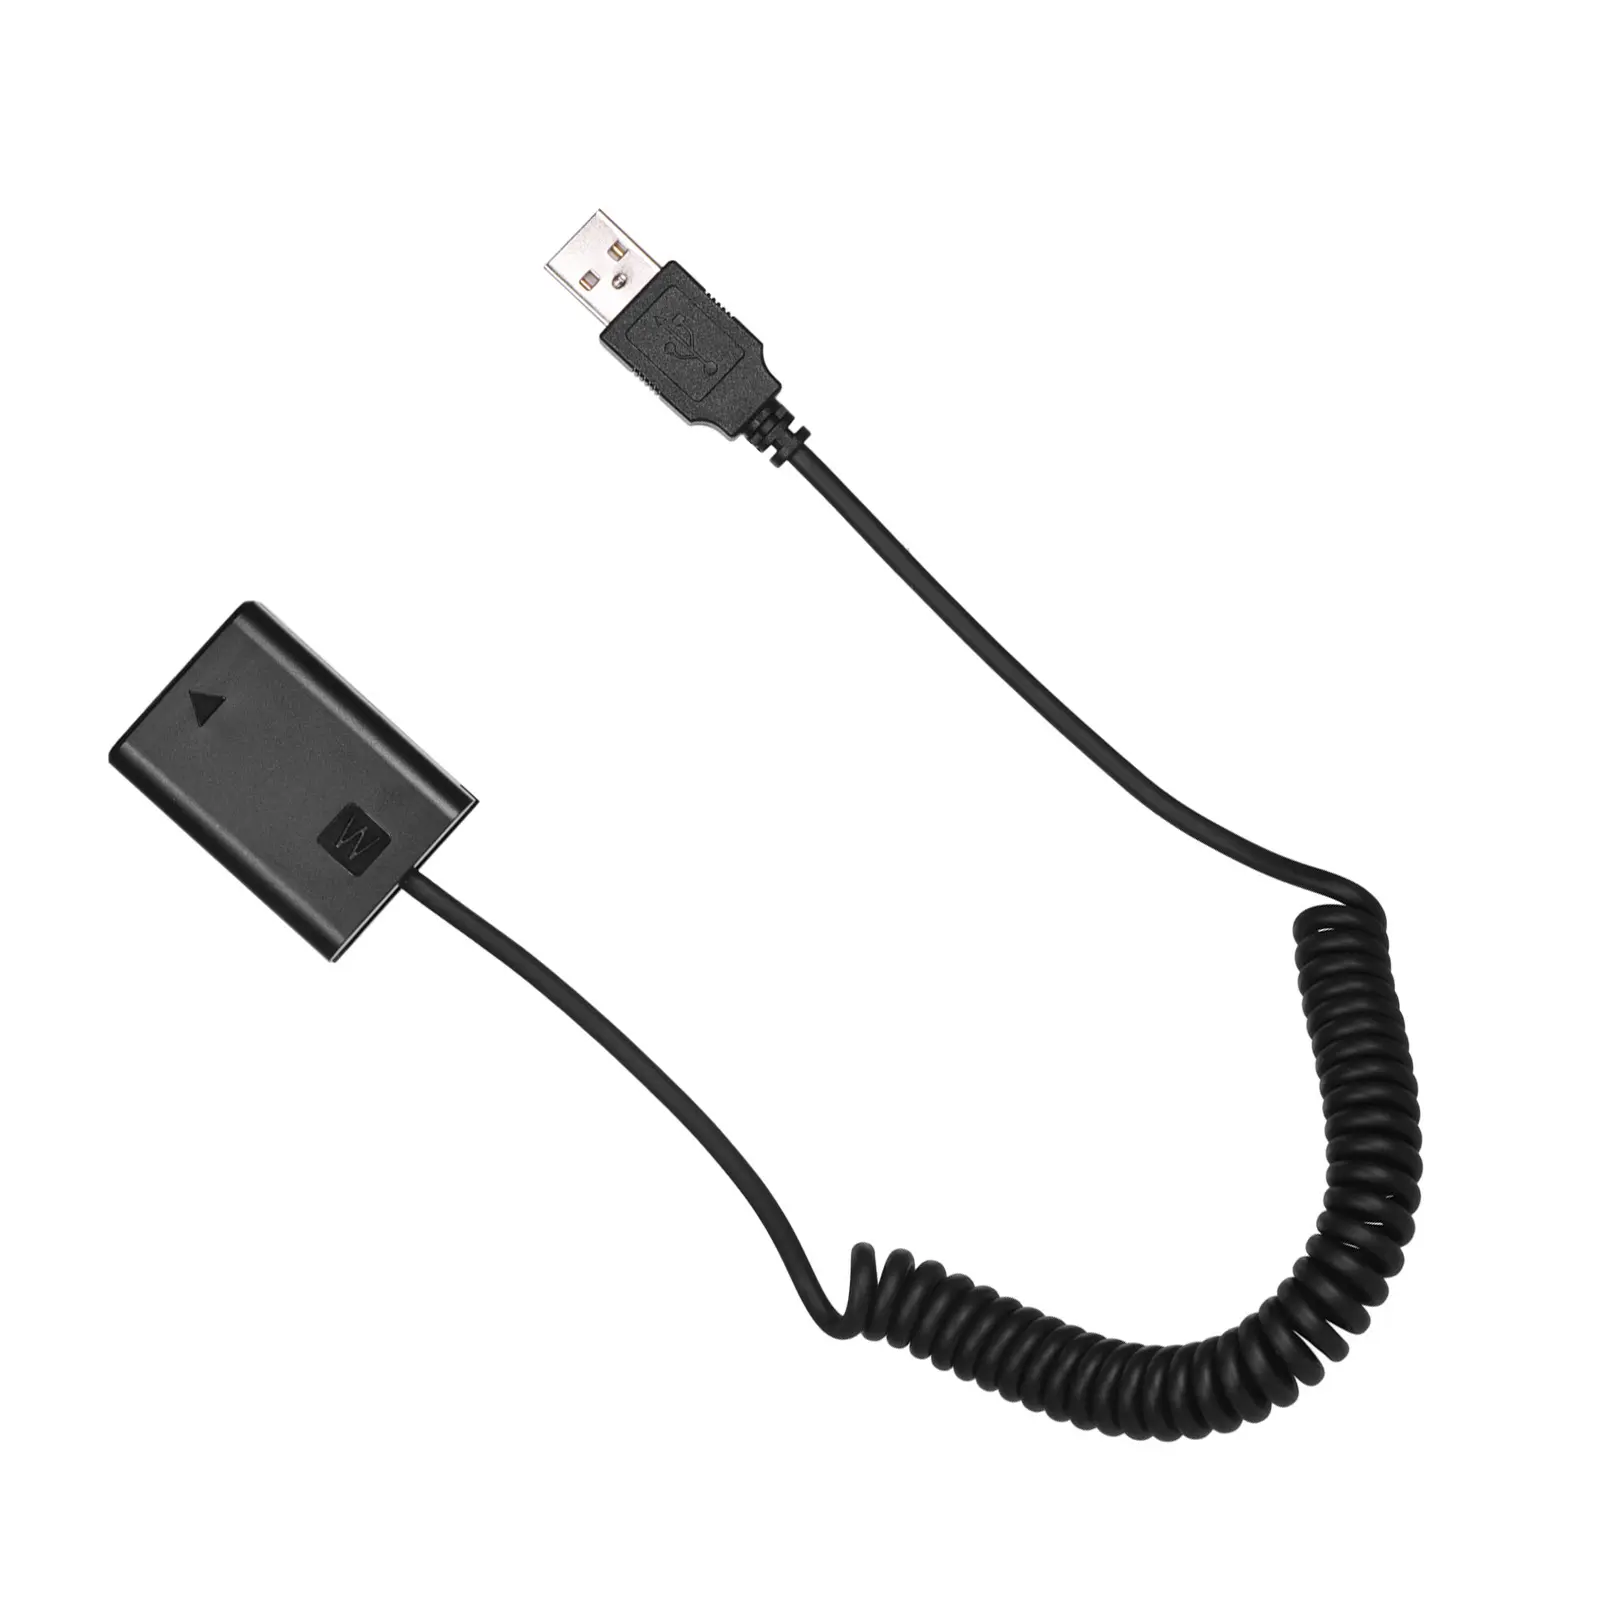 Cable USB NP-FW50 Paquete de batería ficticia, adaptador Compatible con Sony A7 A7II A7S A7RII A6000 A3000 NEX5 NEX3 ILDC Cámara